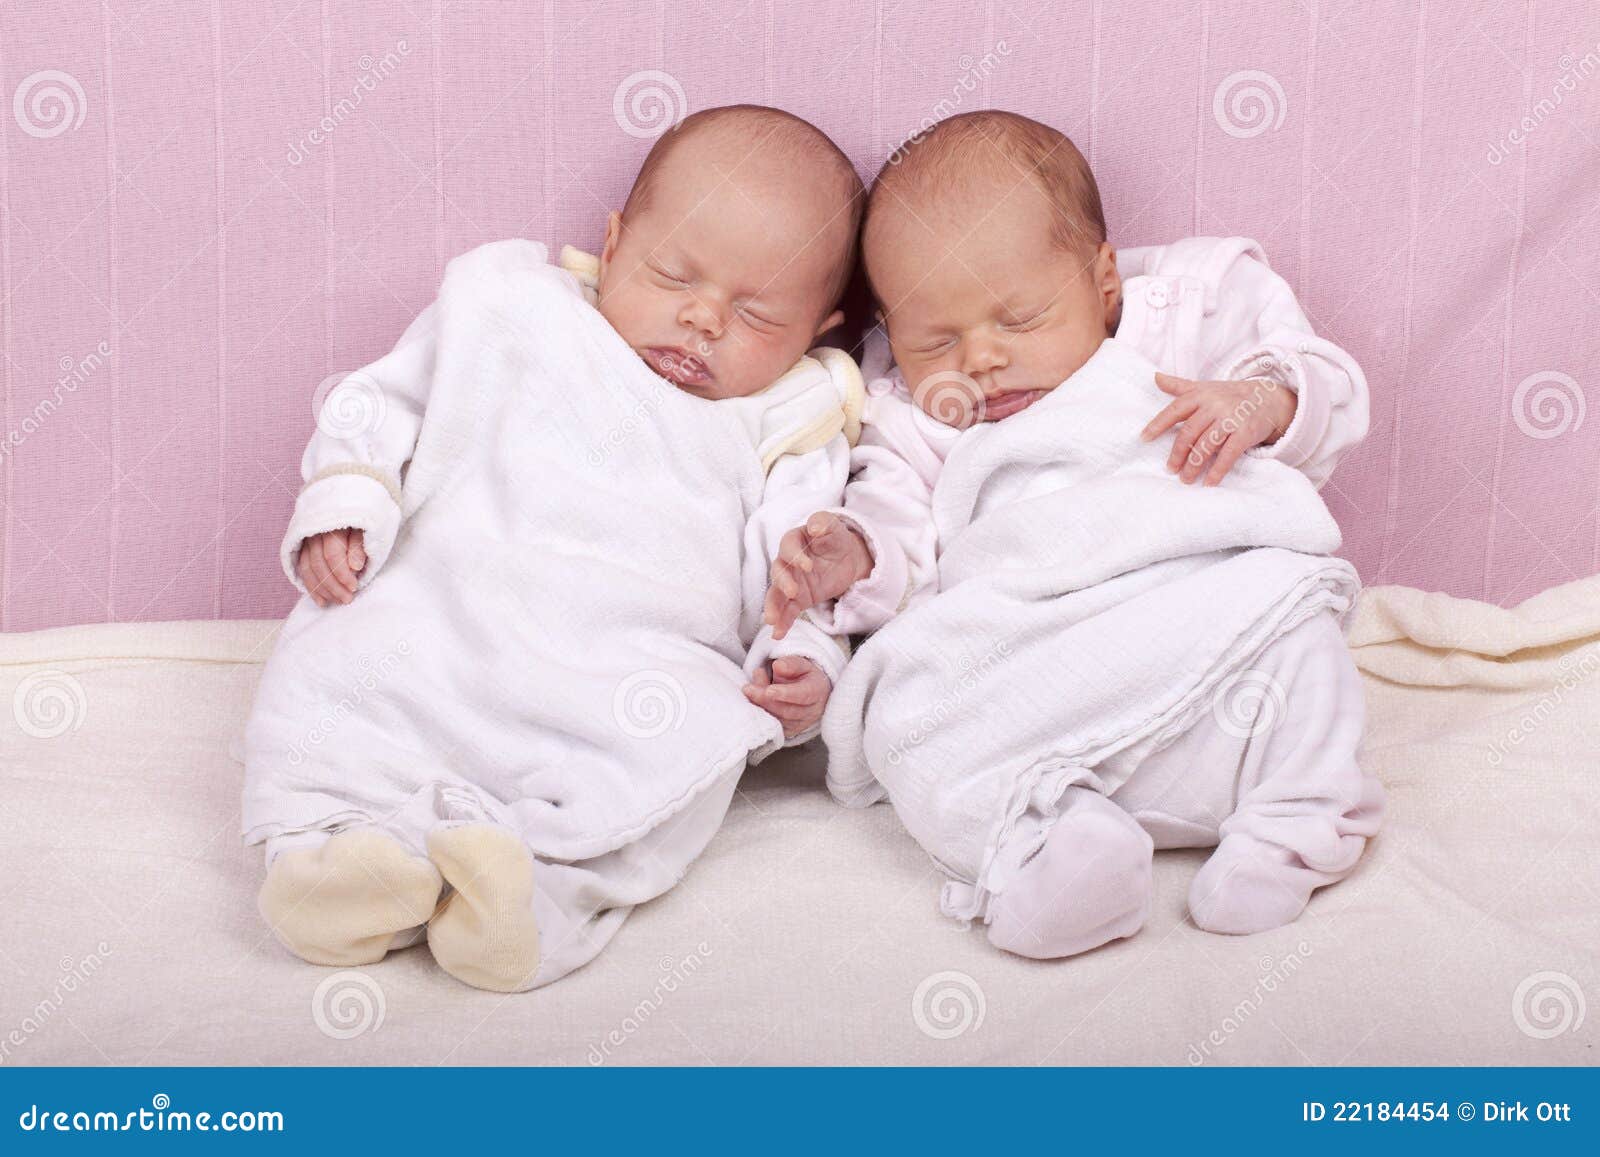 Близнецы май месяц. Двойняшки мальчики беременность. Феномен близнецов. Близнца. Любое фото новорождённых европейских девчонок однояйцевых близнецов.